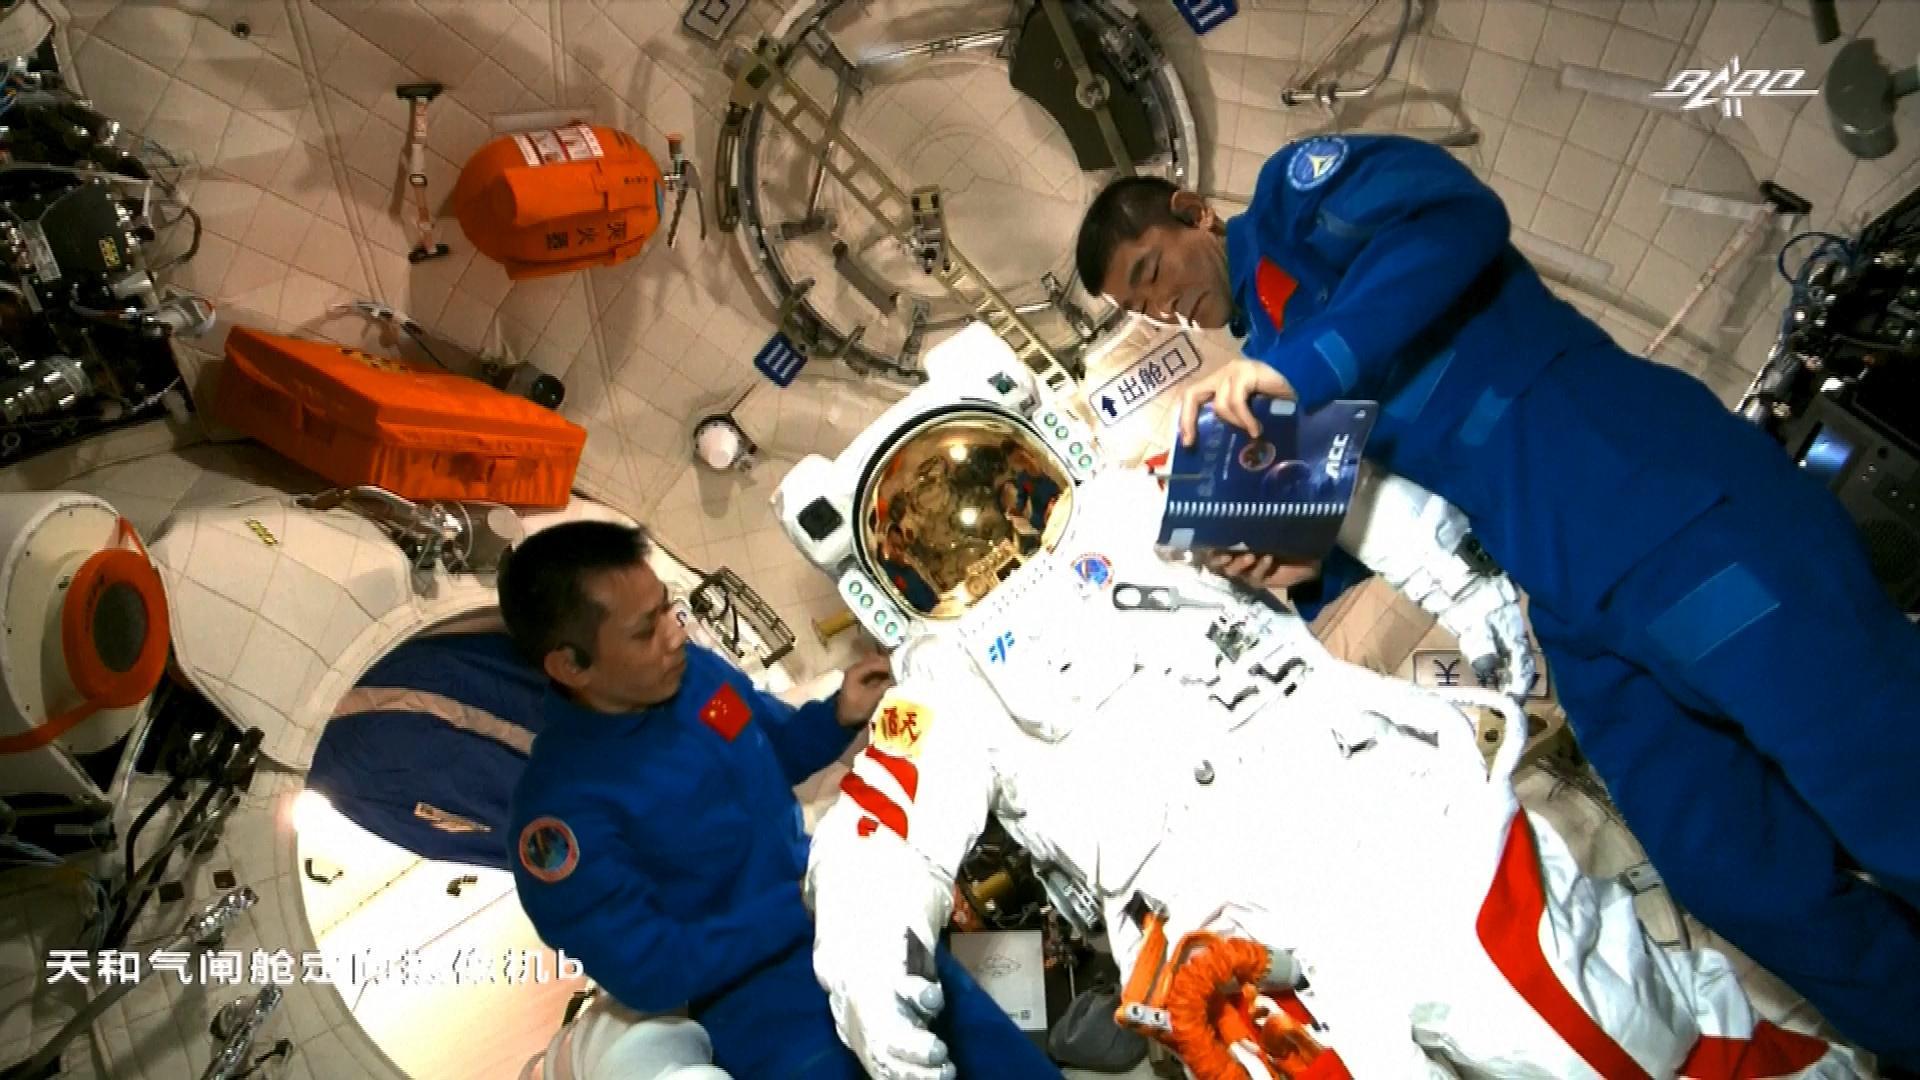 Первый астронавт вышедший в открытый космос. Орбитальная станция Тяньгун. Тяньгун и МКС. Тяньгун 2021. Китайские Тайконавты на космической станции.